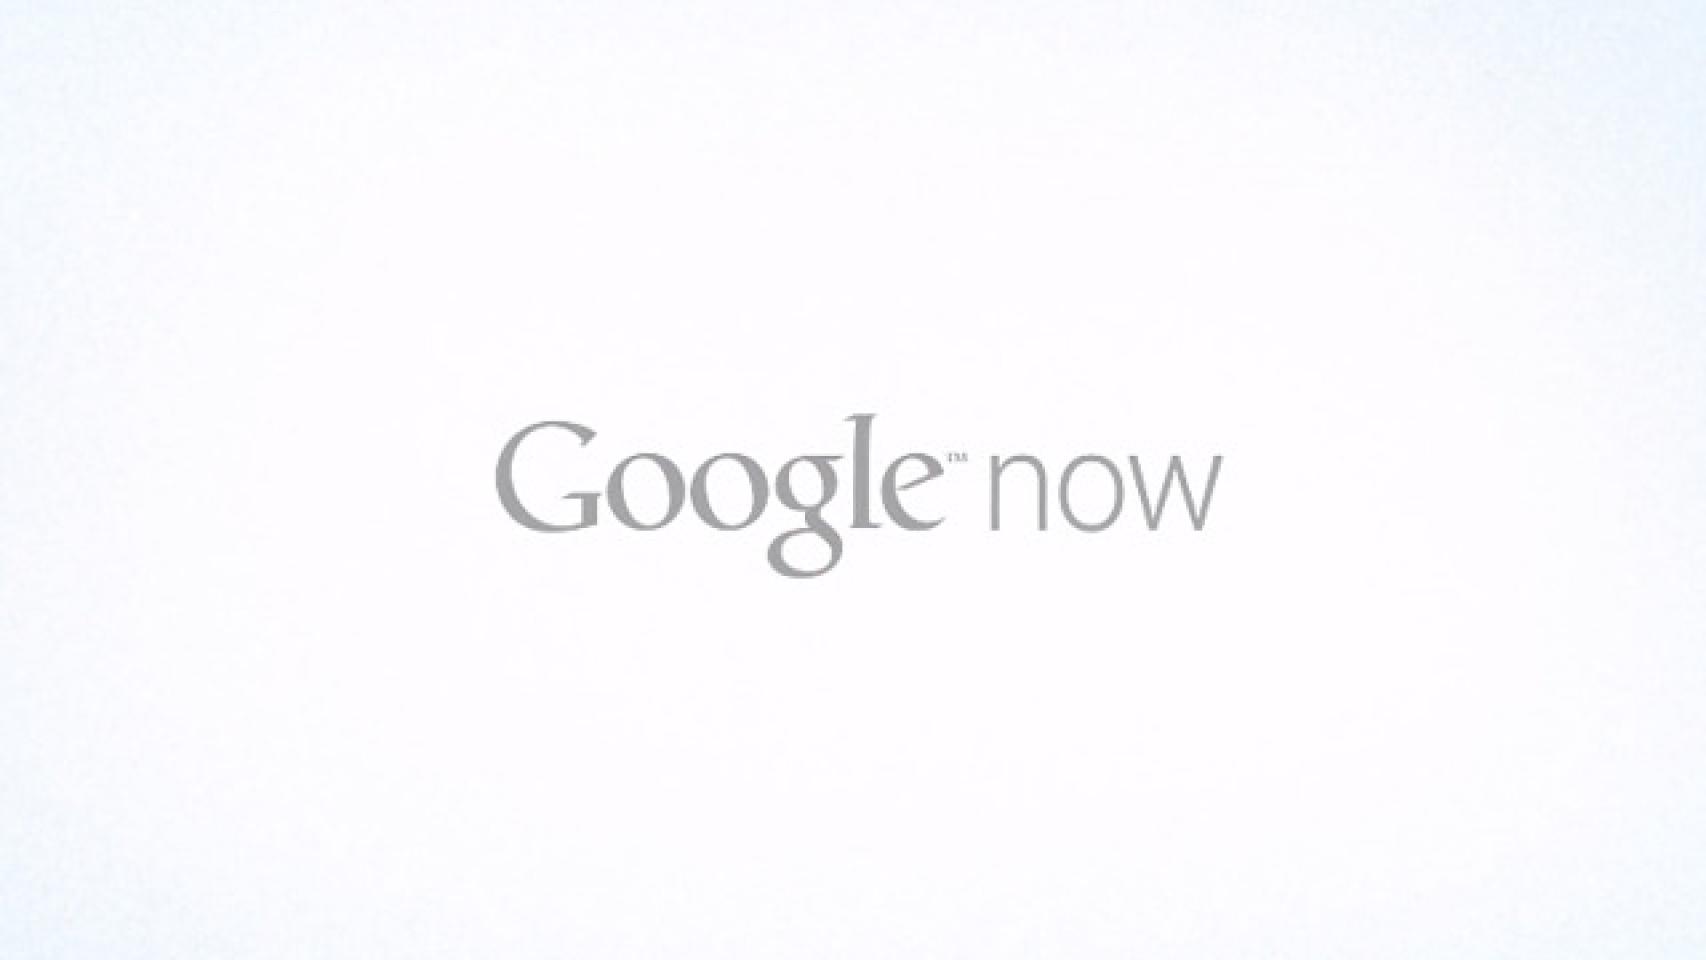 Google Now se actualiza con nuevas Cards y soporte en Español